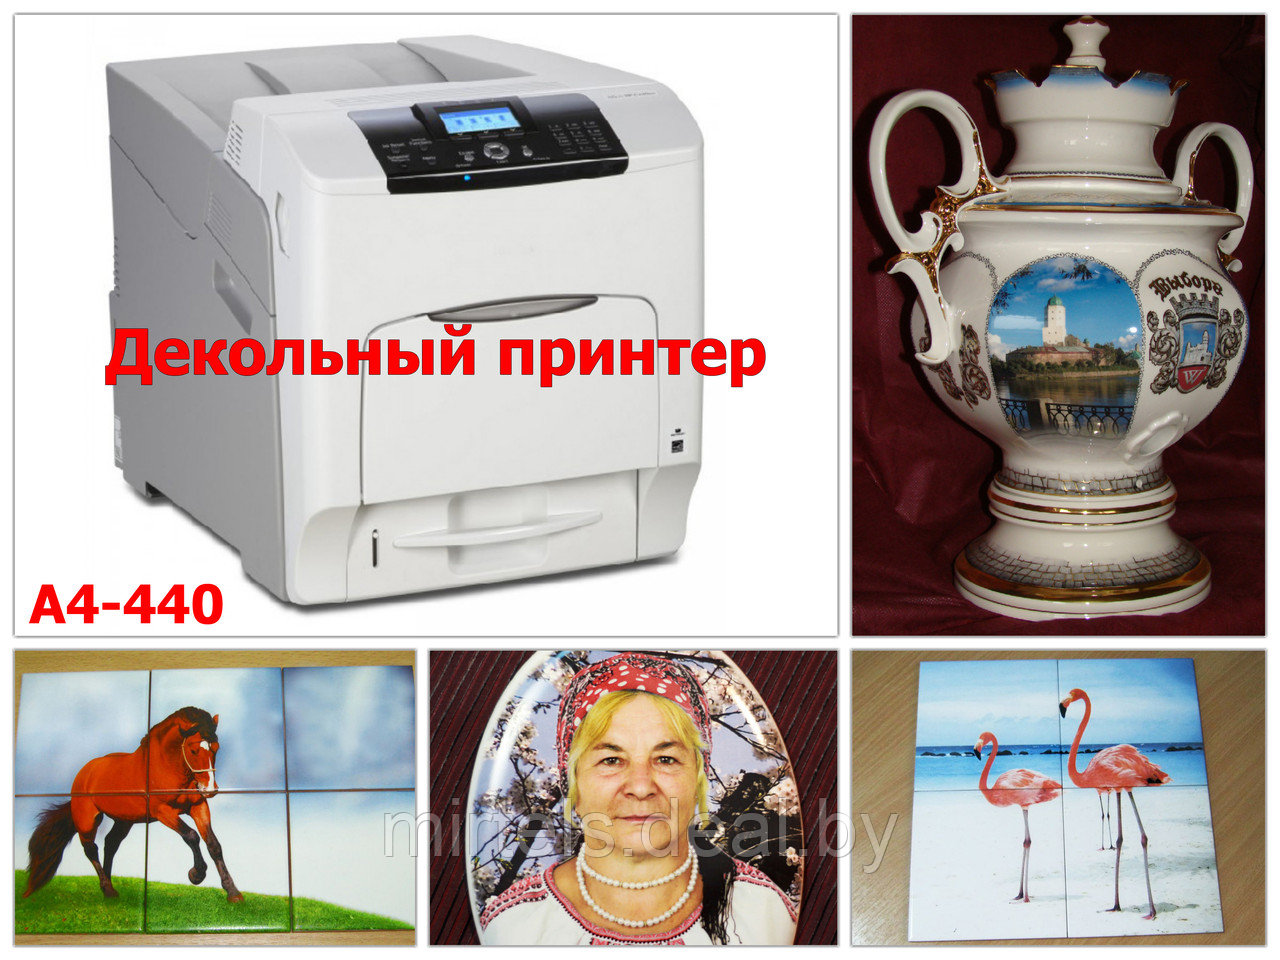 Декольный принтер А4-440